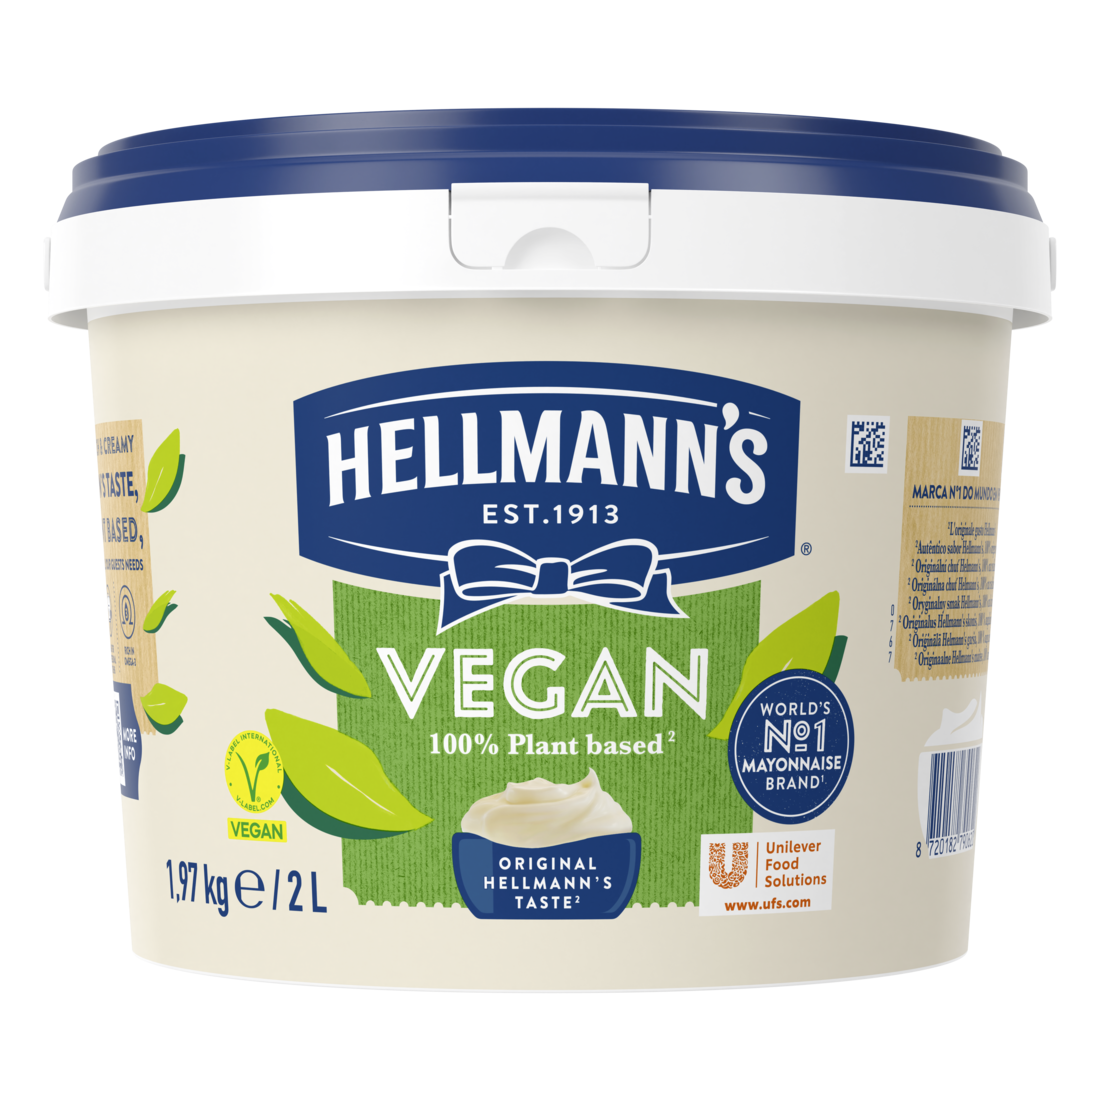 Hellmann's Vegan 2L - Výborná k vegetariánským a veganským pokrmům